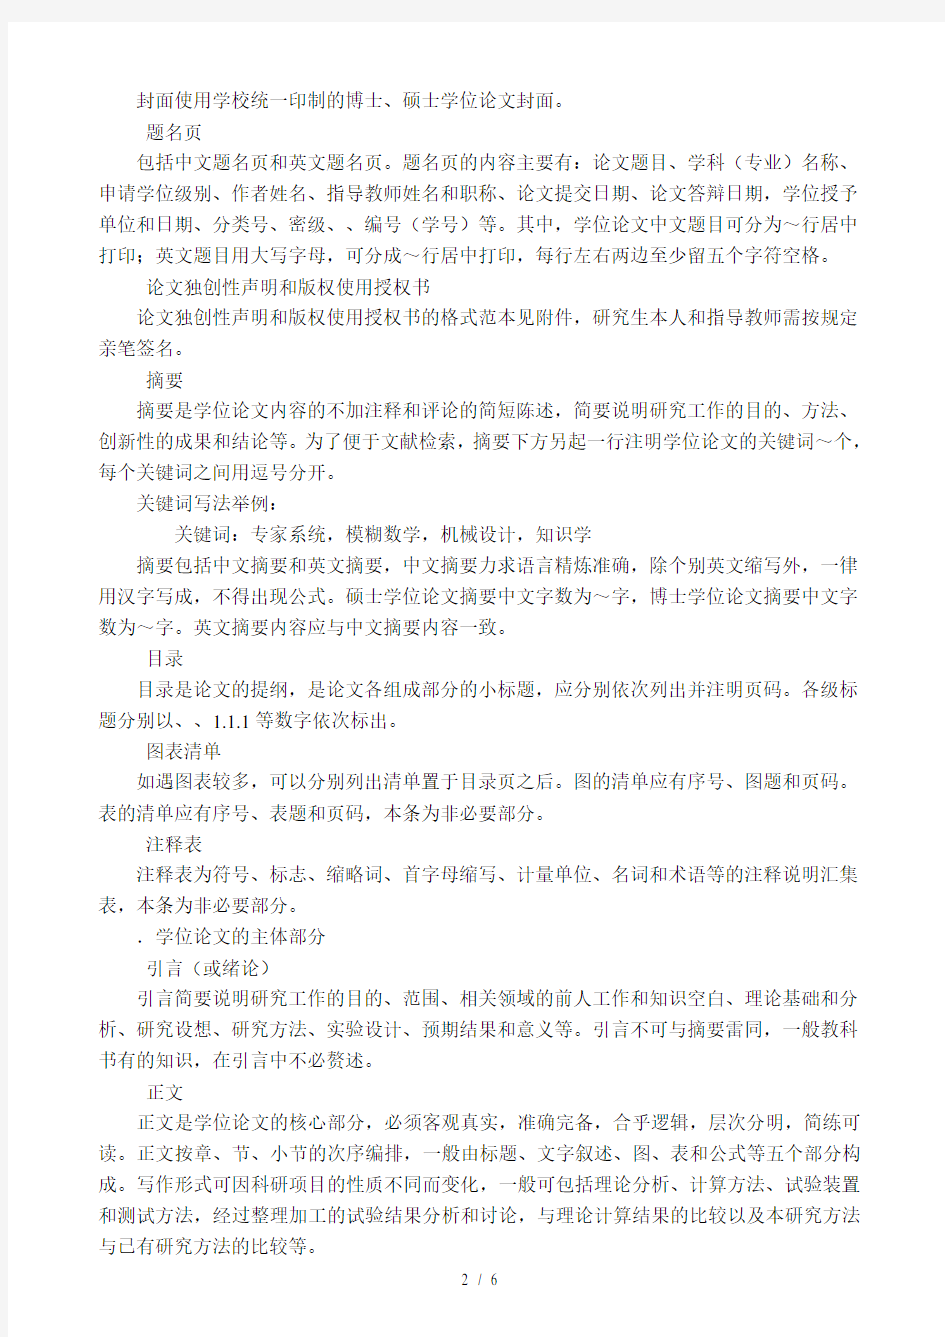 江苏大学研究生学位论文撰写格式要求